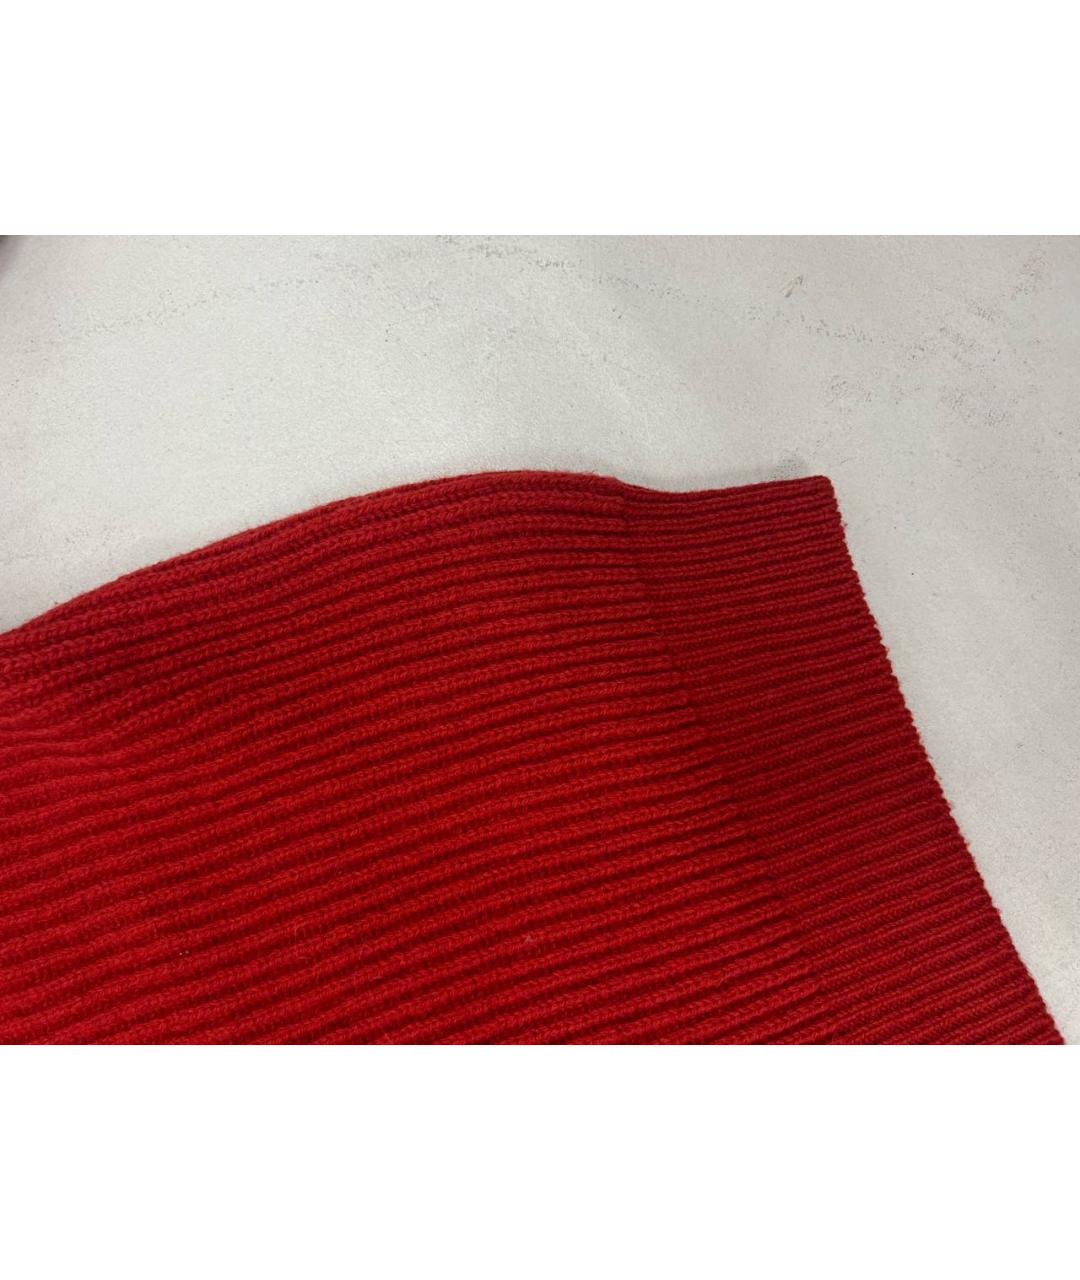 KOLOR Красный шерстяной джемпер / свитер, фото 6